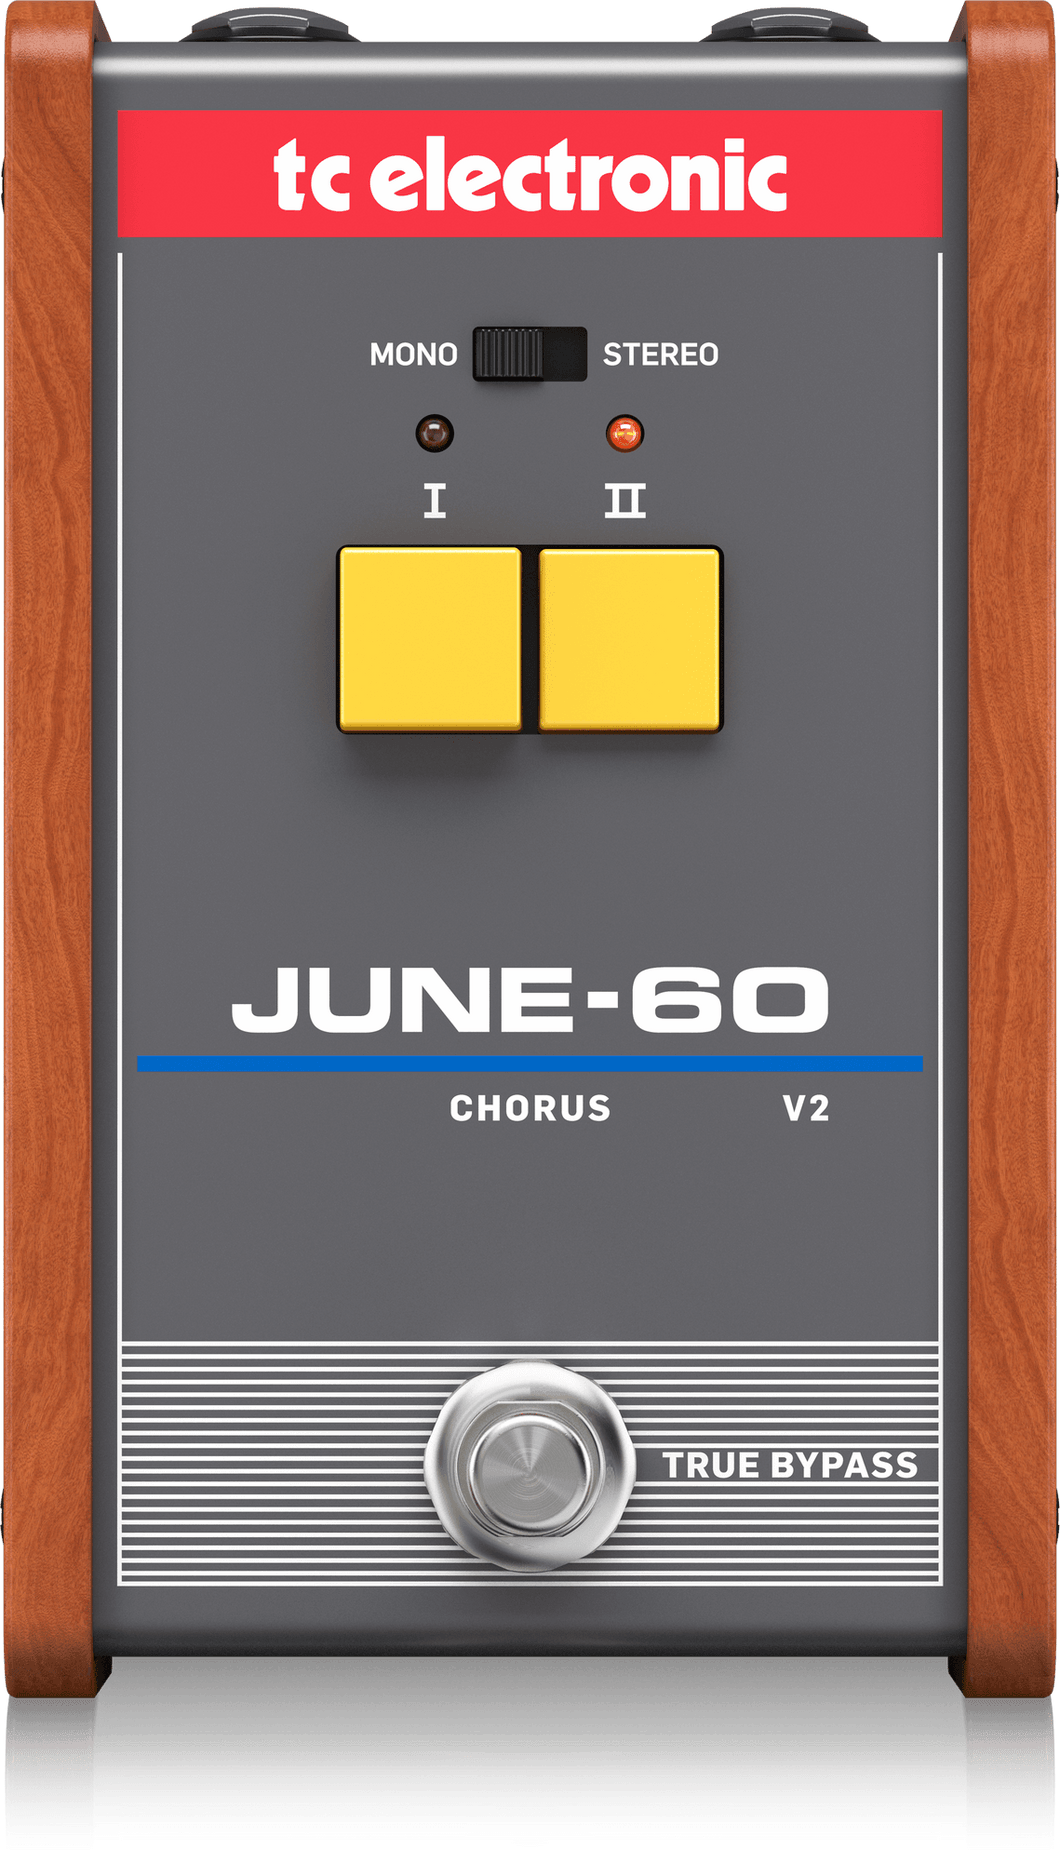 JUNE-60 Chorus V2